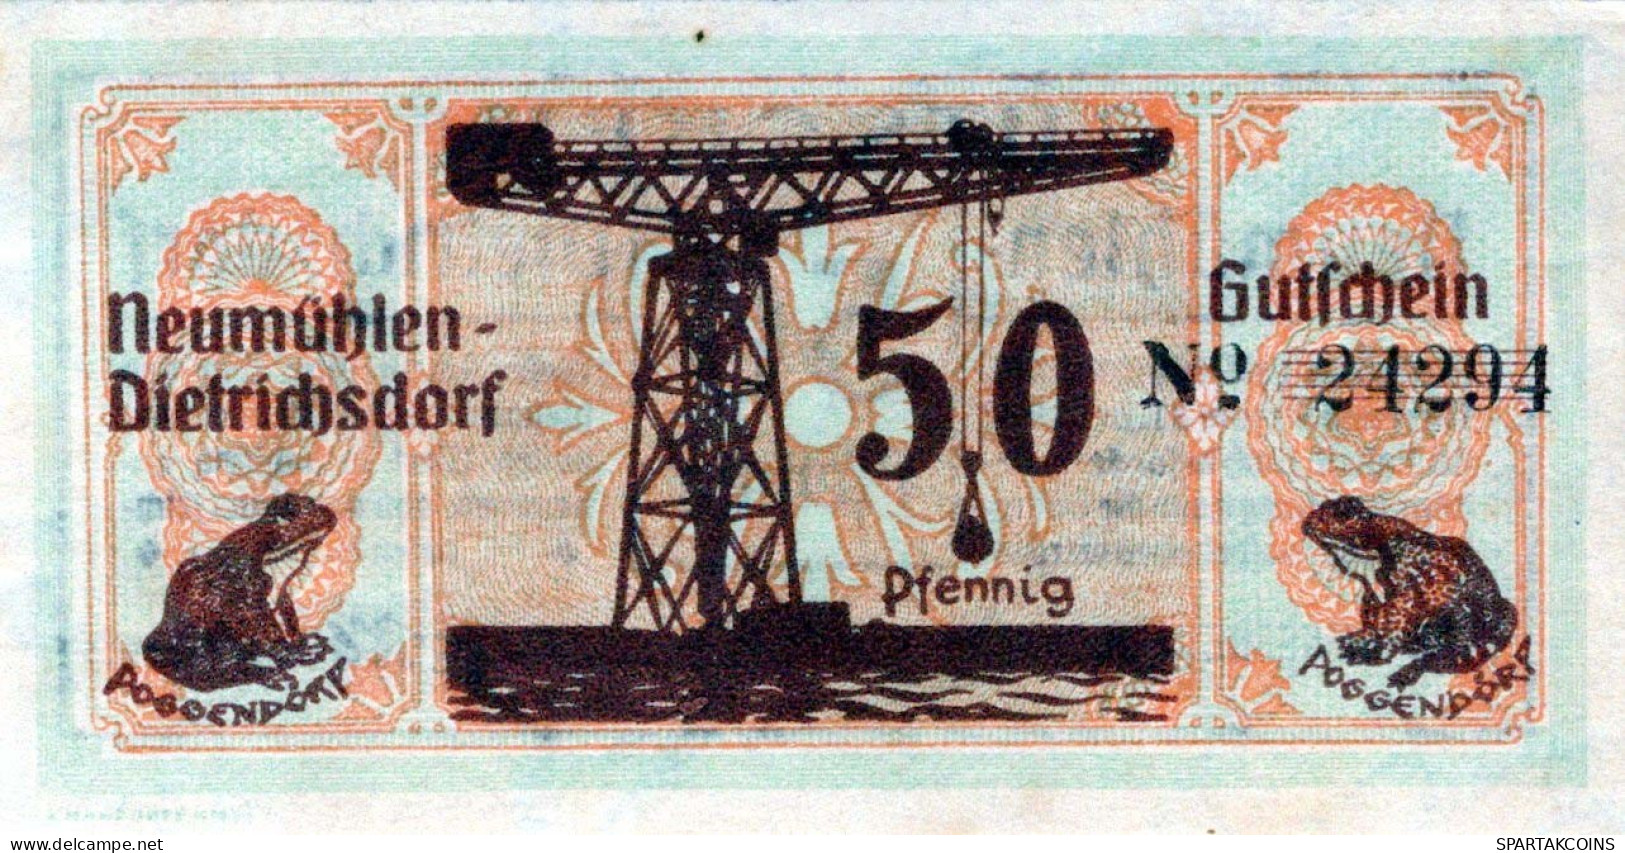 50 PFENNIG 1922 Stadt NEUMÜHLEN-DIETRICHSDORF UNC DEUTSCHLAND #PH161 - [11] Local Banknote Issues